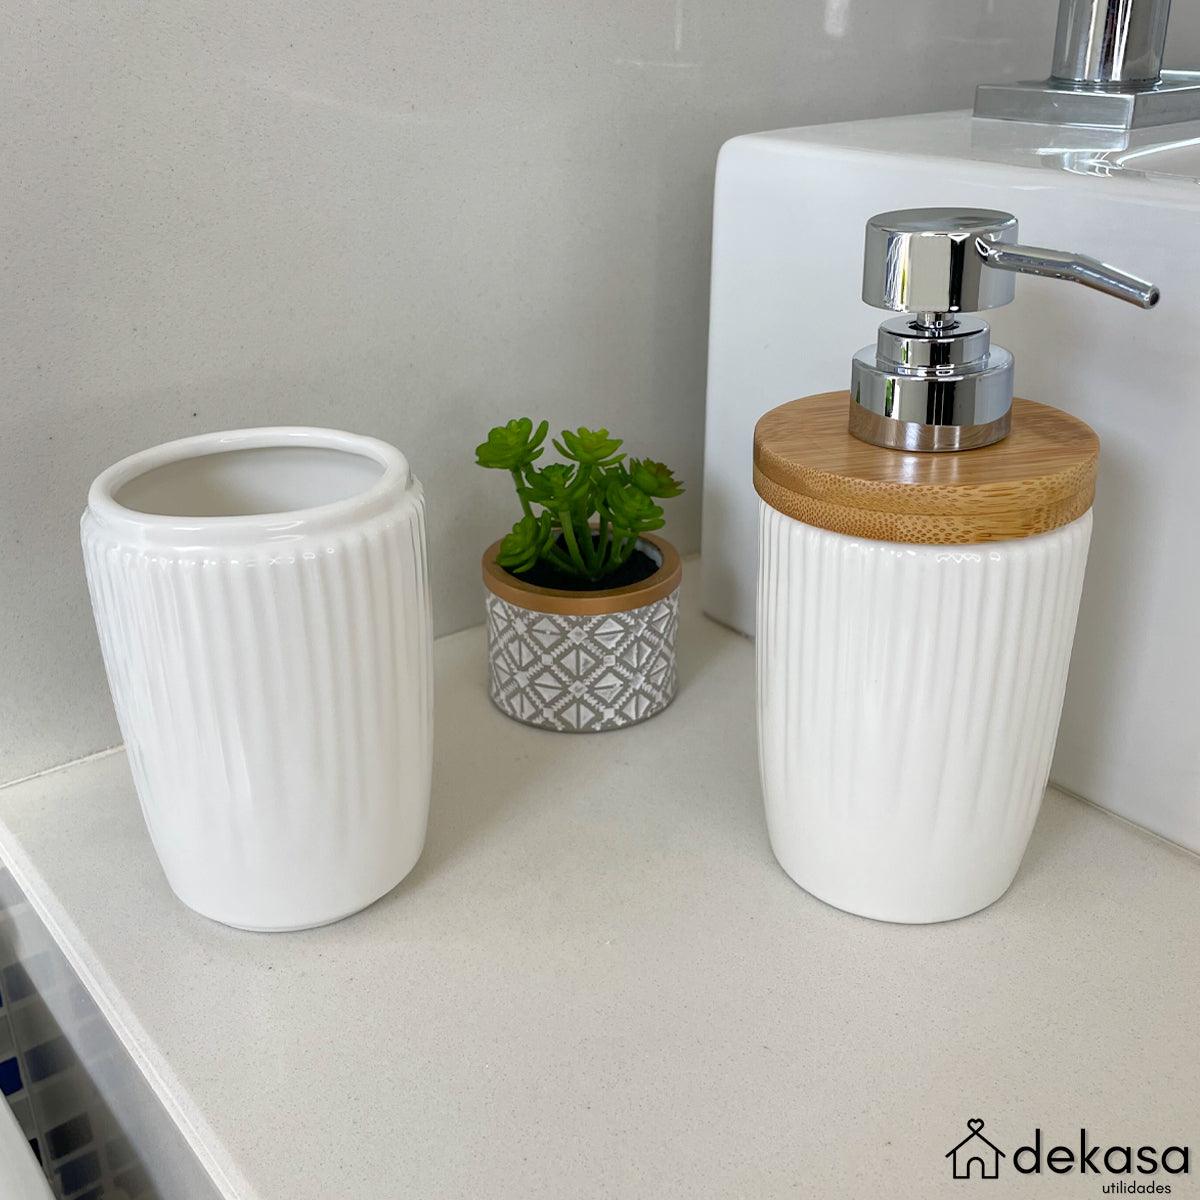 Kit Banheiro Lavabo Saboneteira e Dispenser Porcelana 2 Peças - Dekasa Utilidades